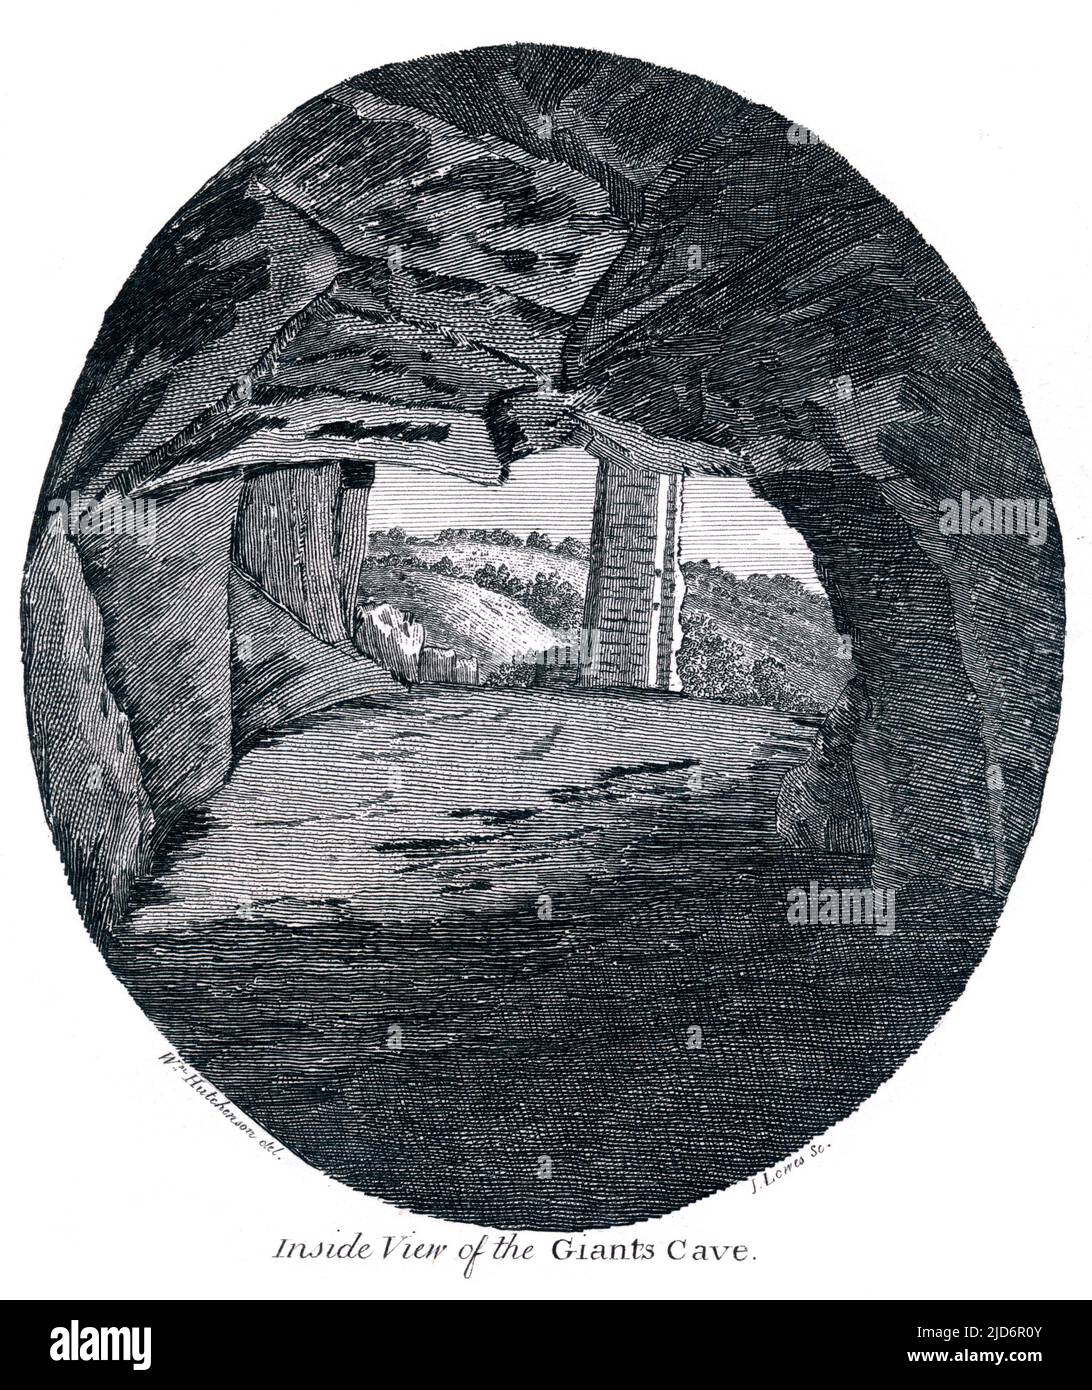 Vue intérieure de la grotte des géants, Cumbria, gravée par James Lowes de Carlisle, 1790 Banque D'Images